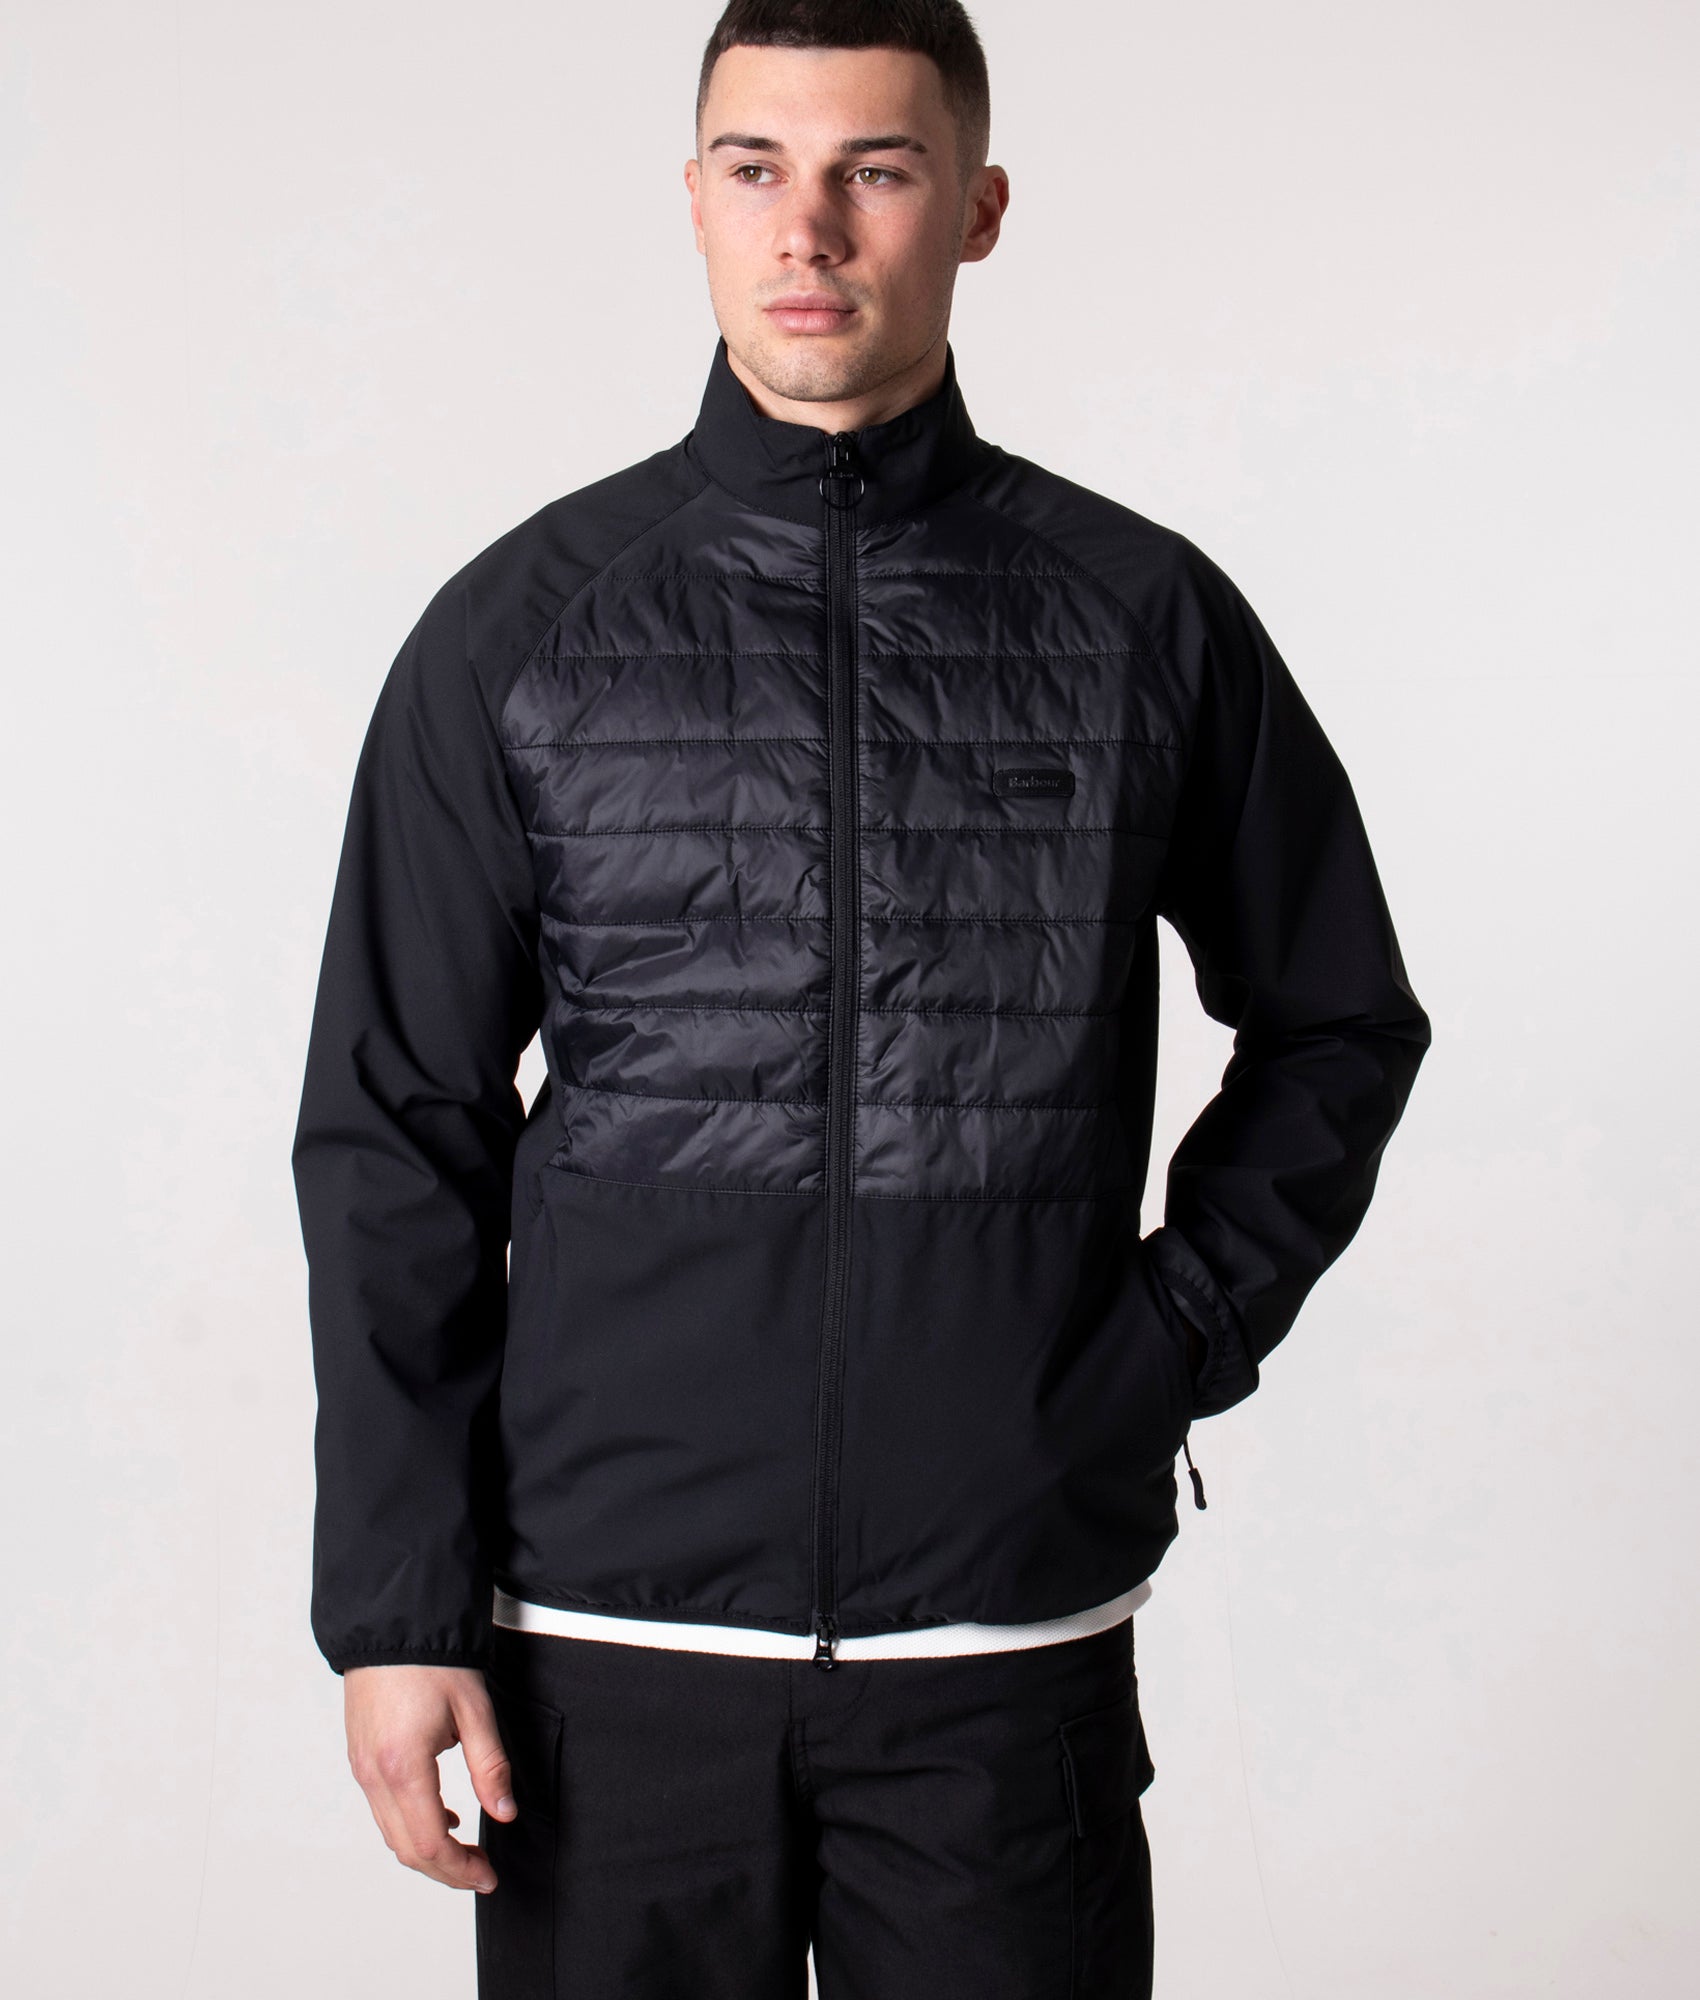 Barbour Lifestyle Mens Walking Casual Hybrid Jacket - Colour: BK11 Black - Size: XL